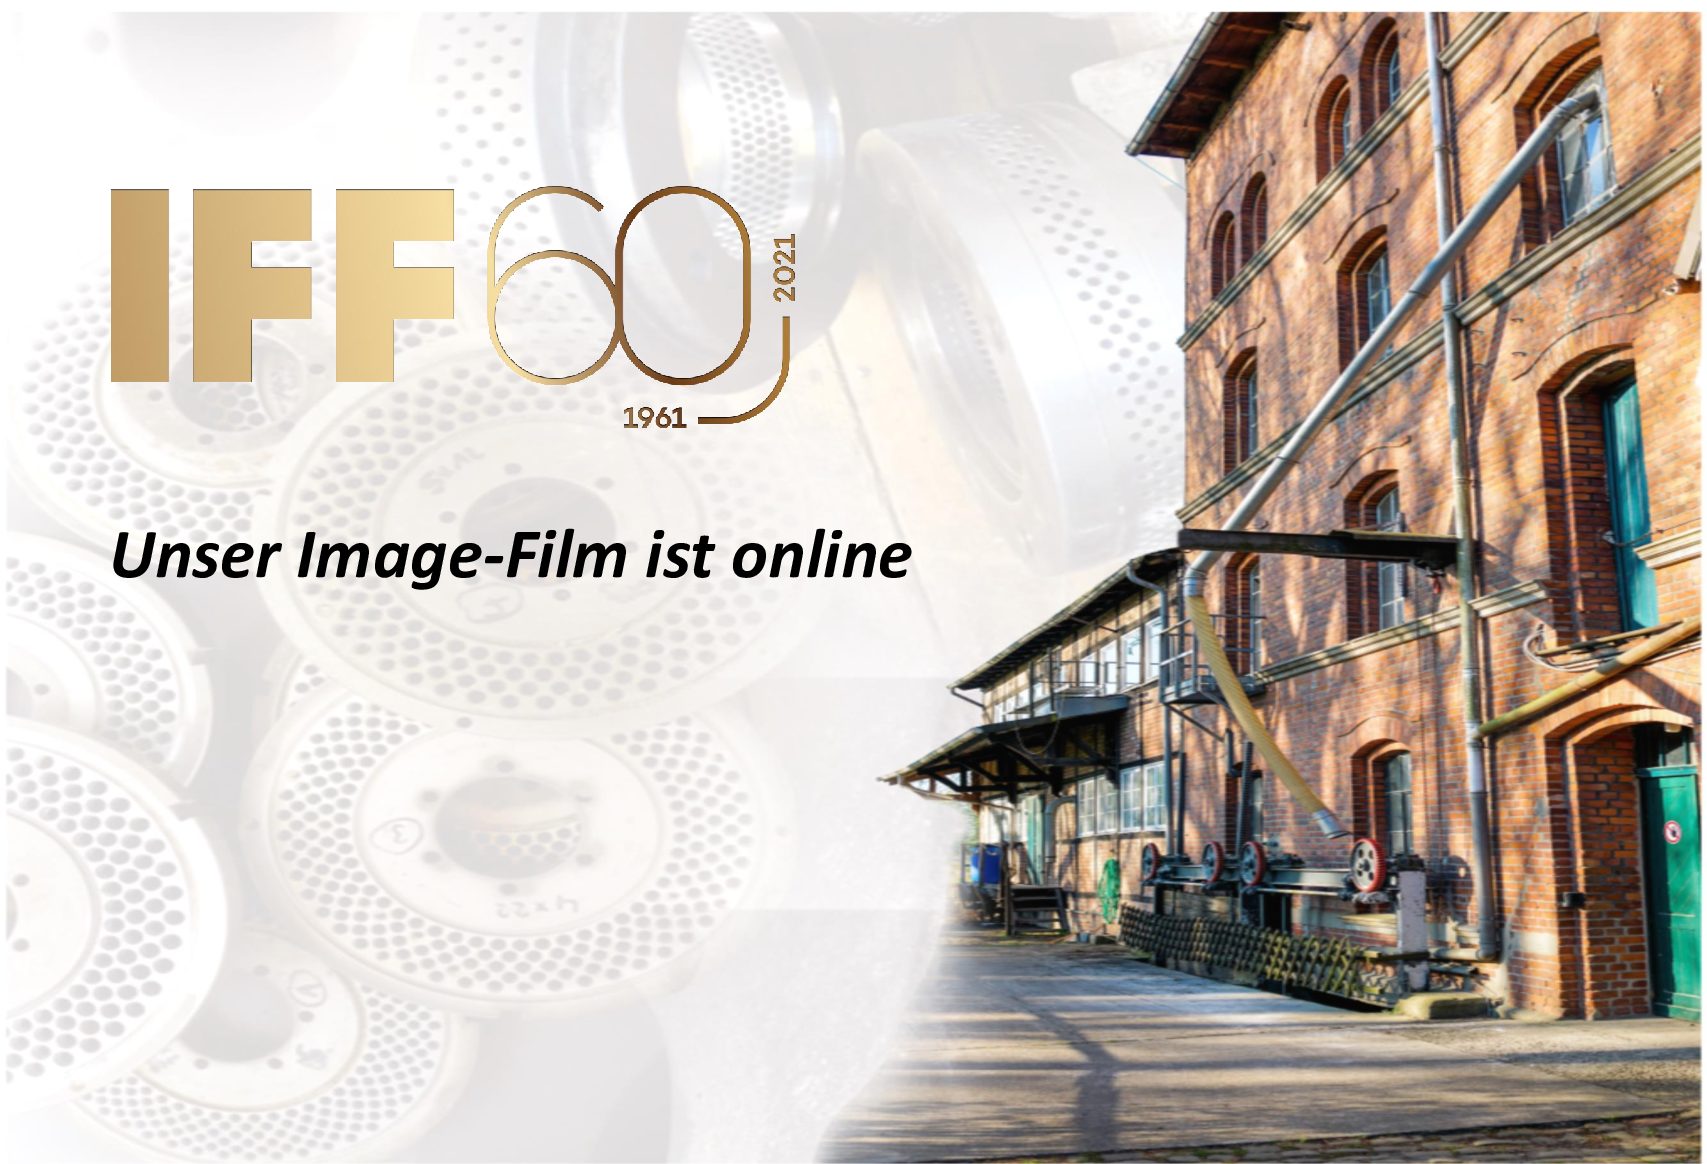 IFF Image-Film